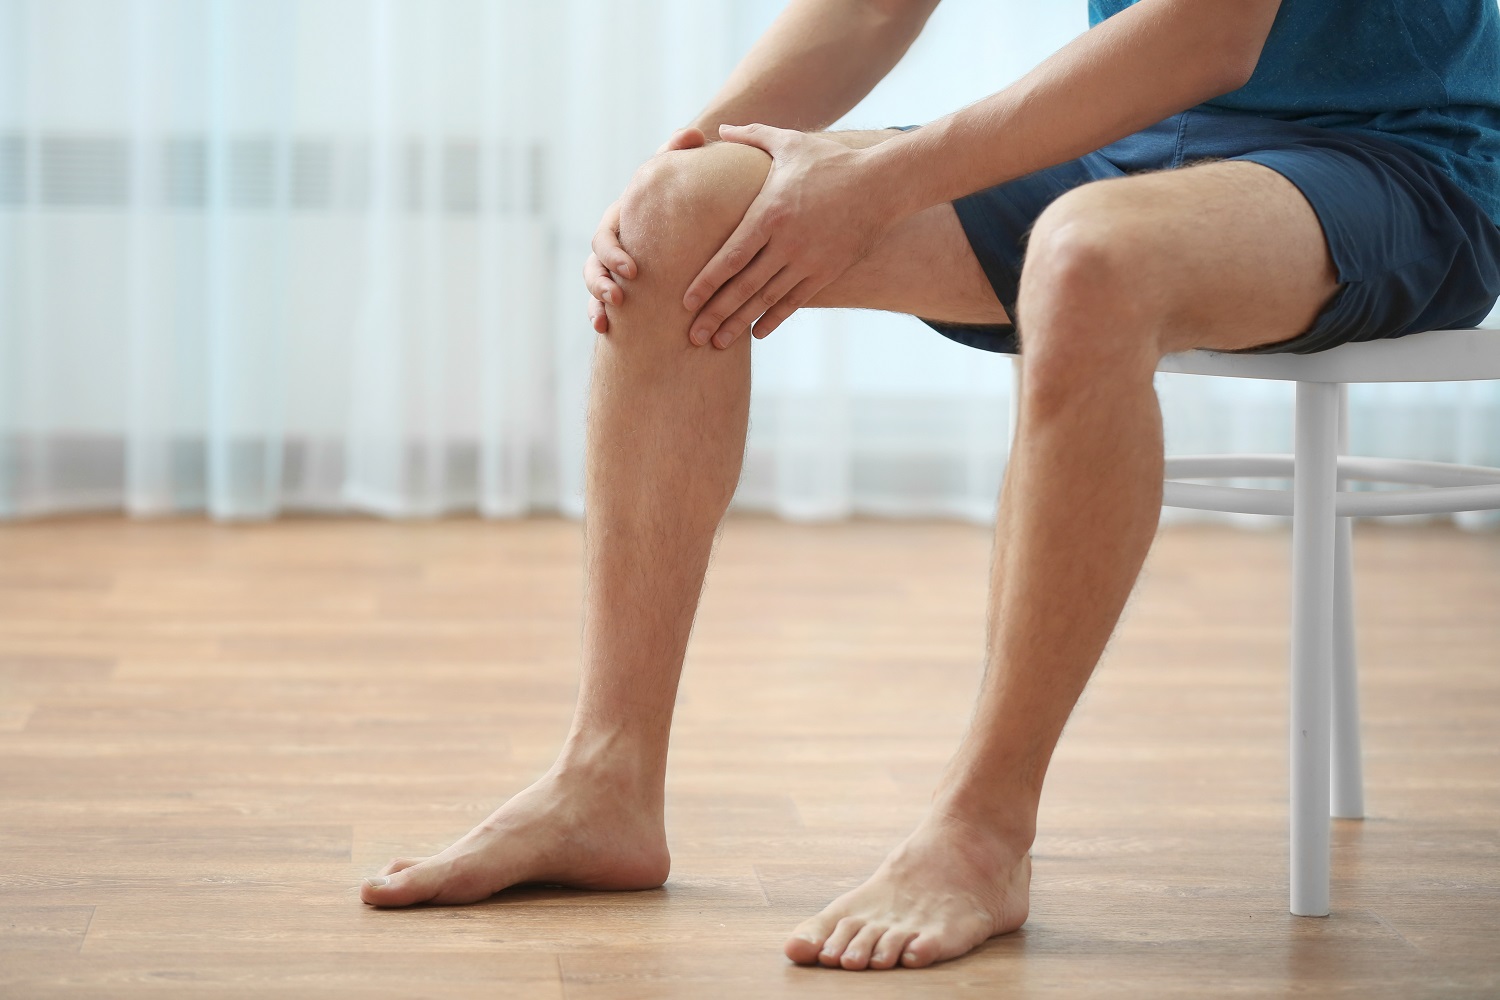 prekomjerna težina zglobova dobra mast za bolove u zglobu koljena